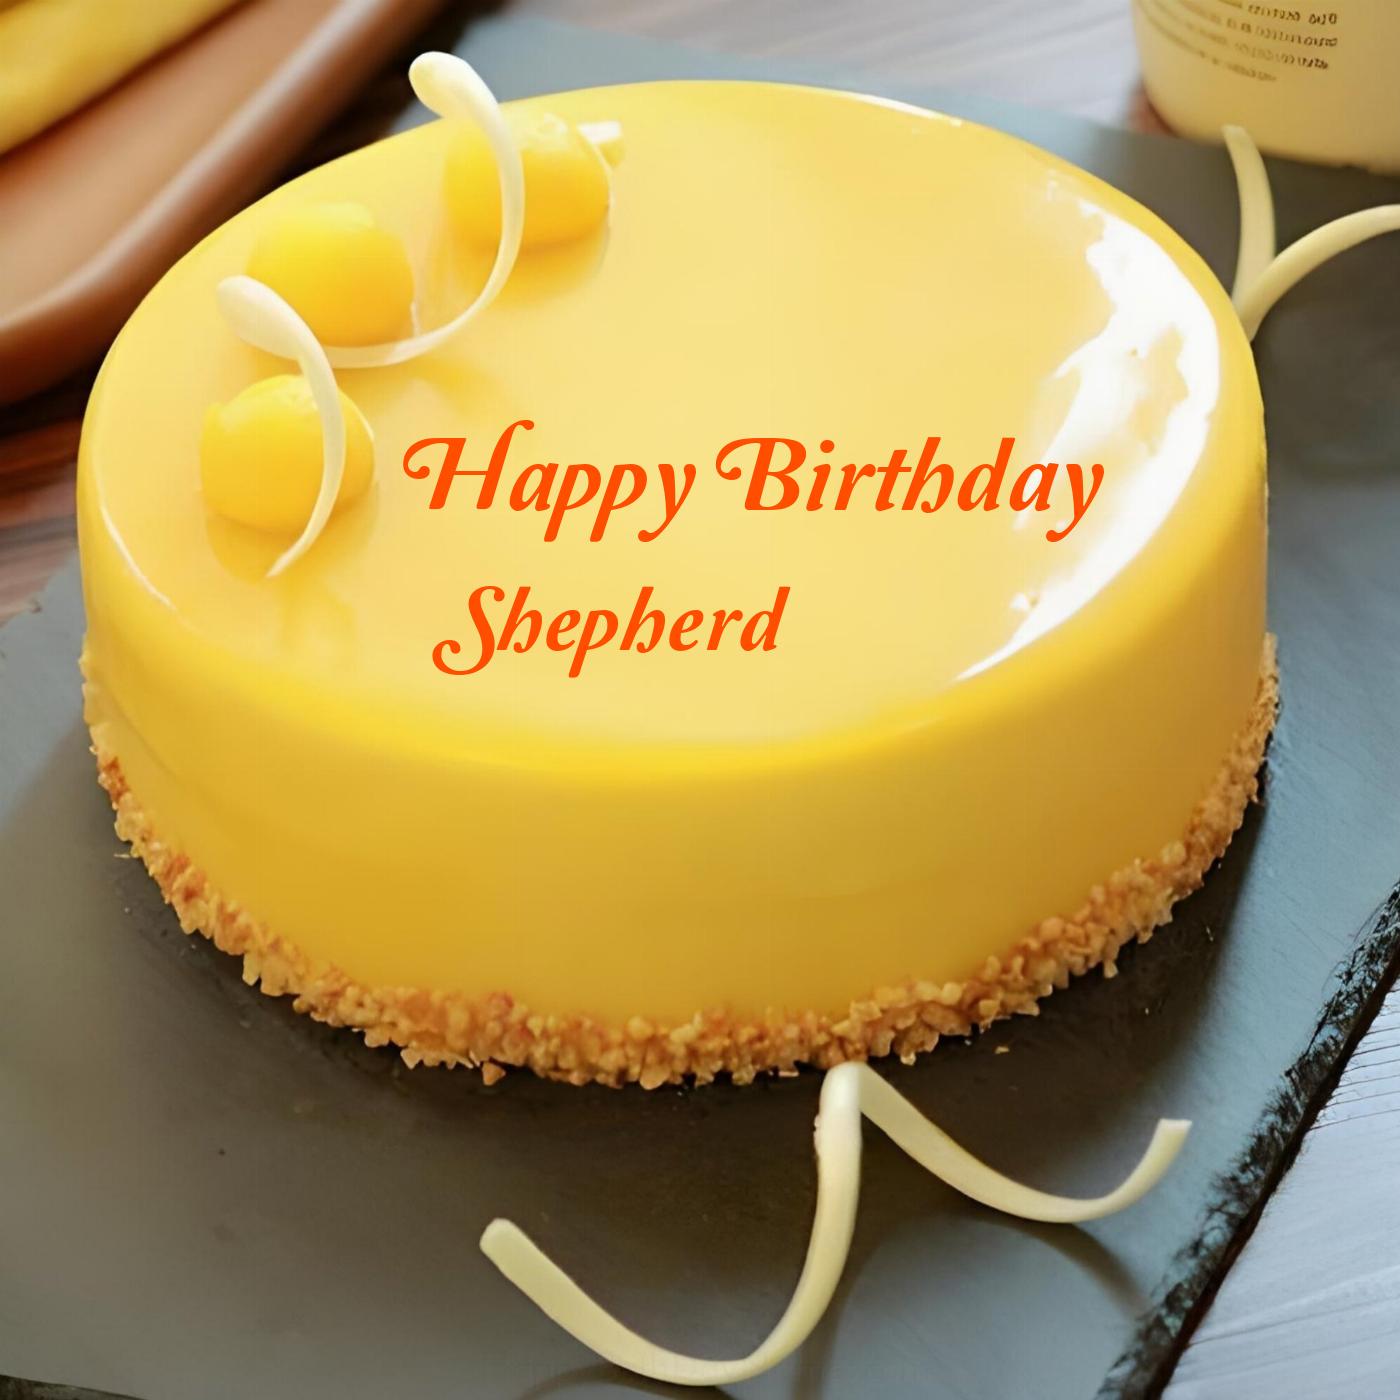 Happy Birthday Shepherd Beautiful Yellow Cake